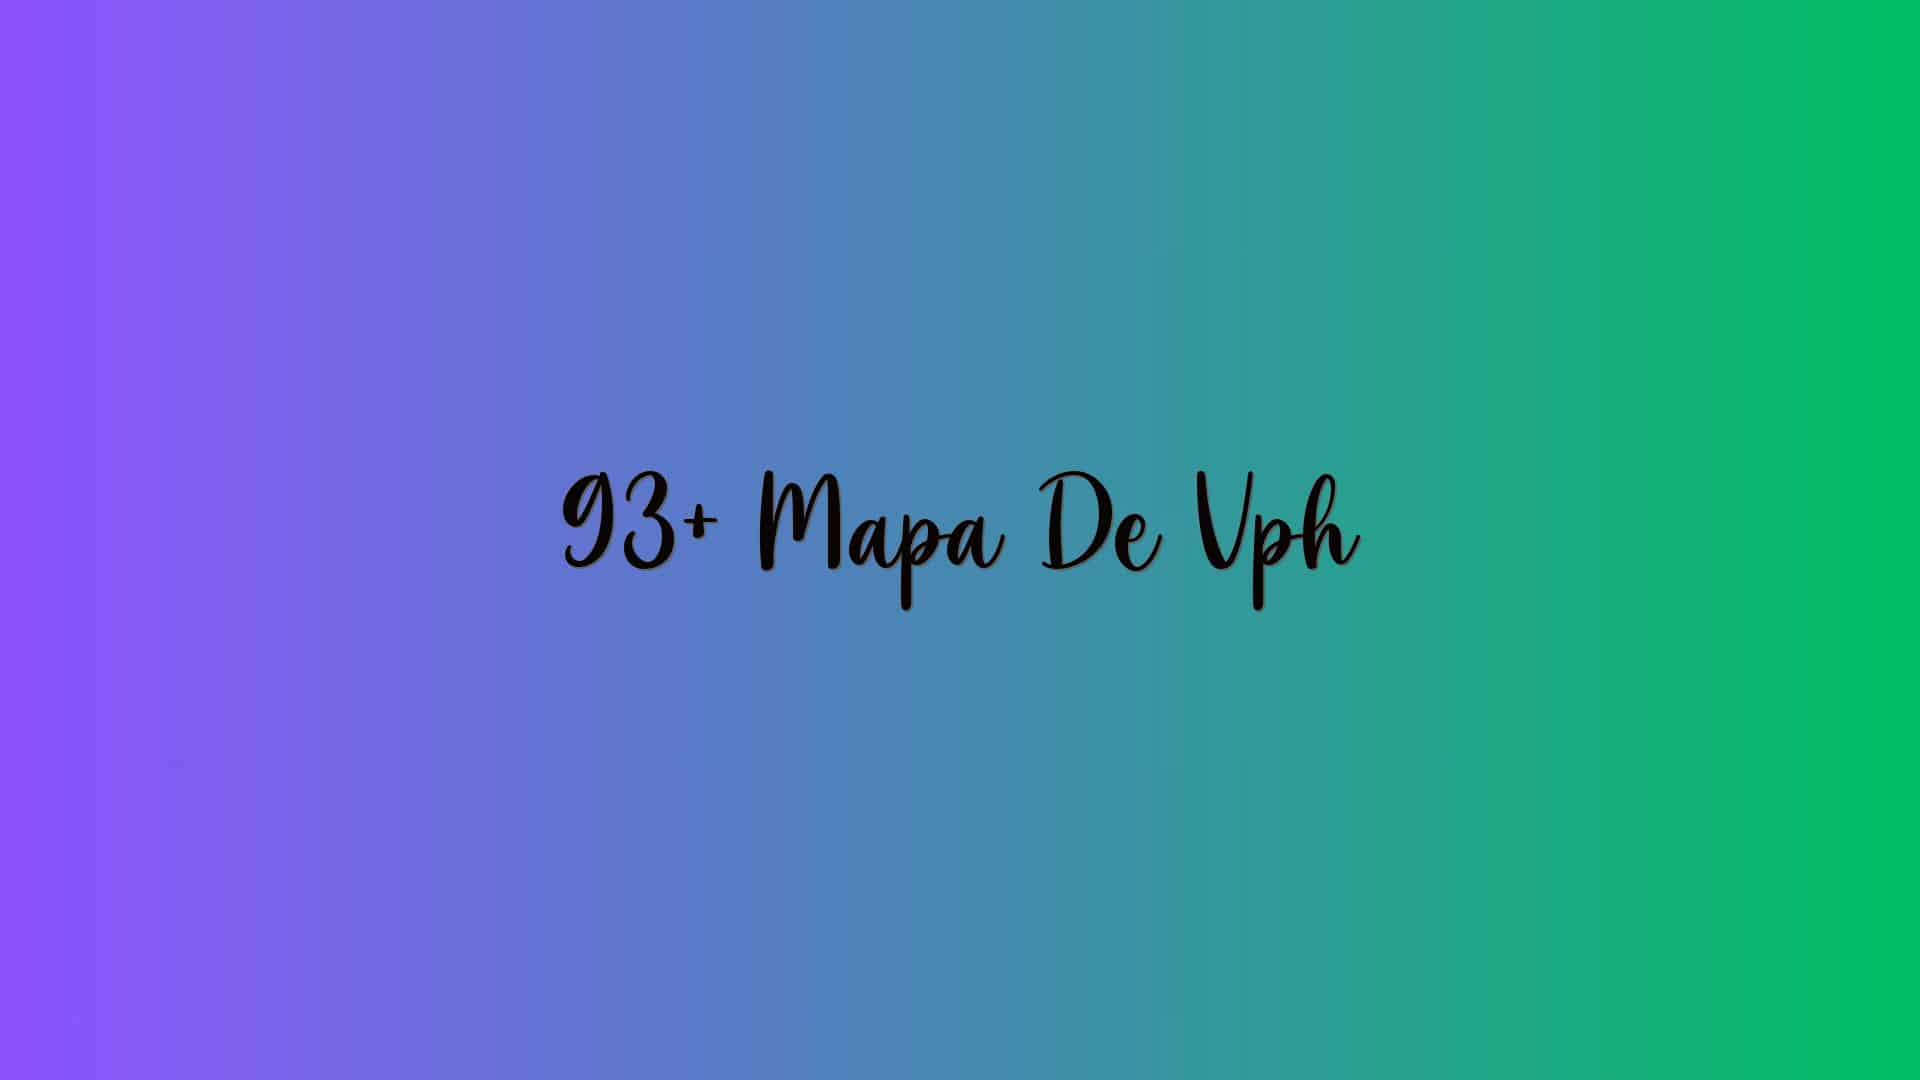 93+ Mapa De Vph